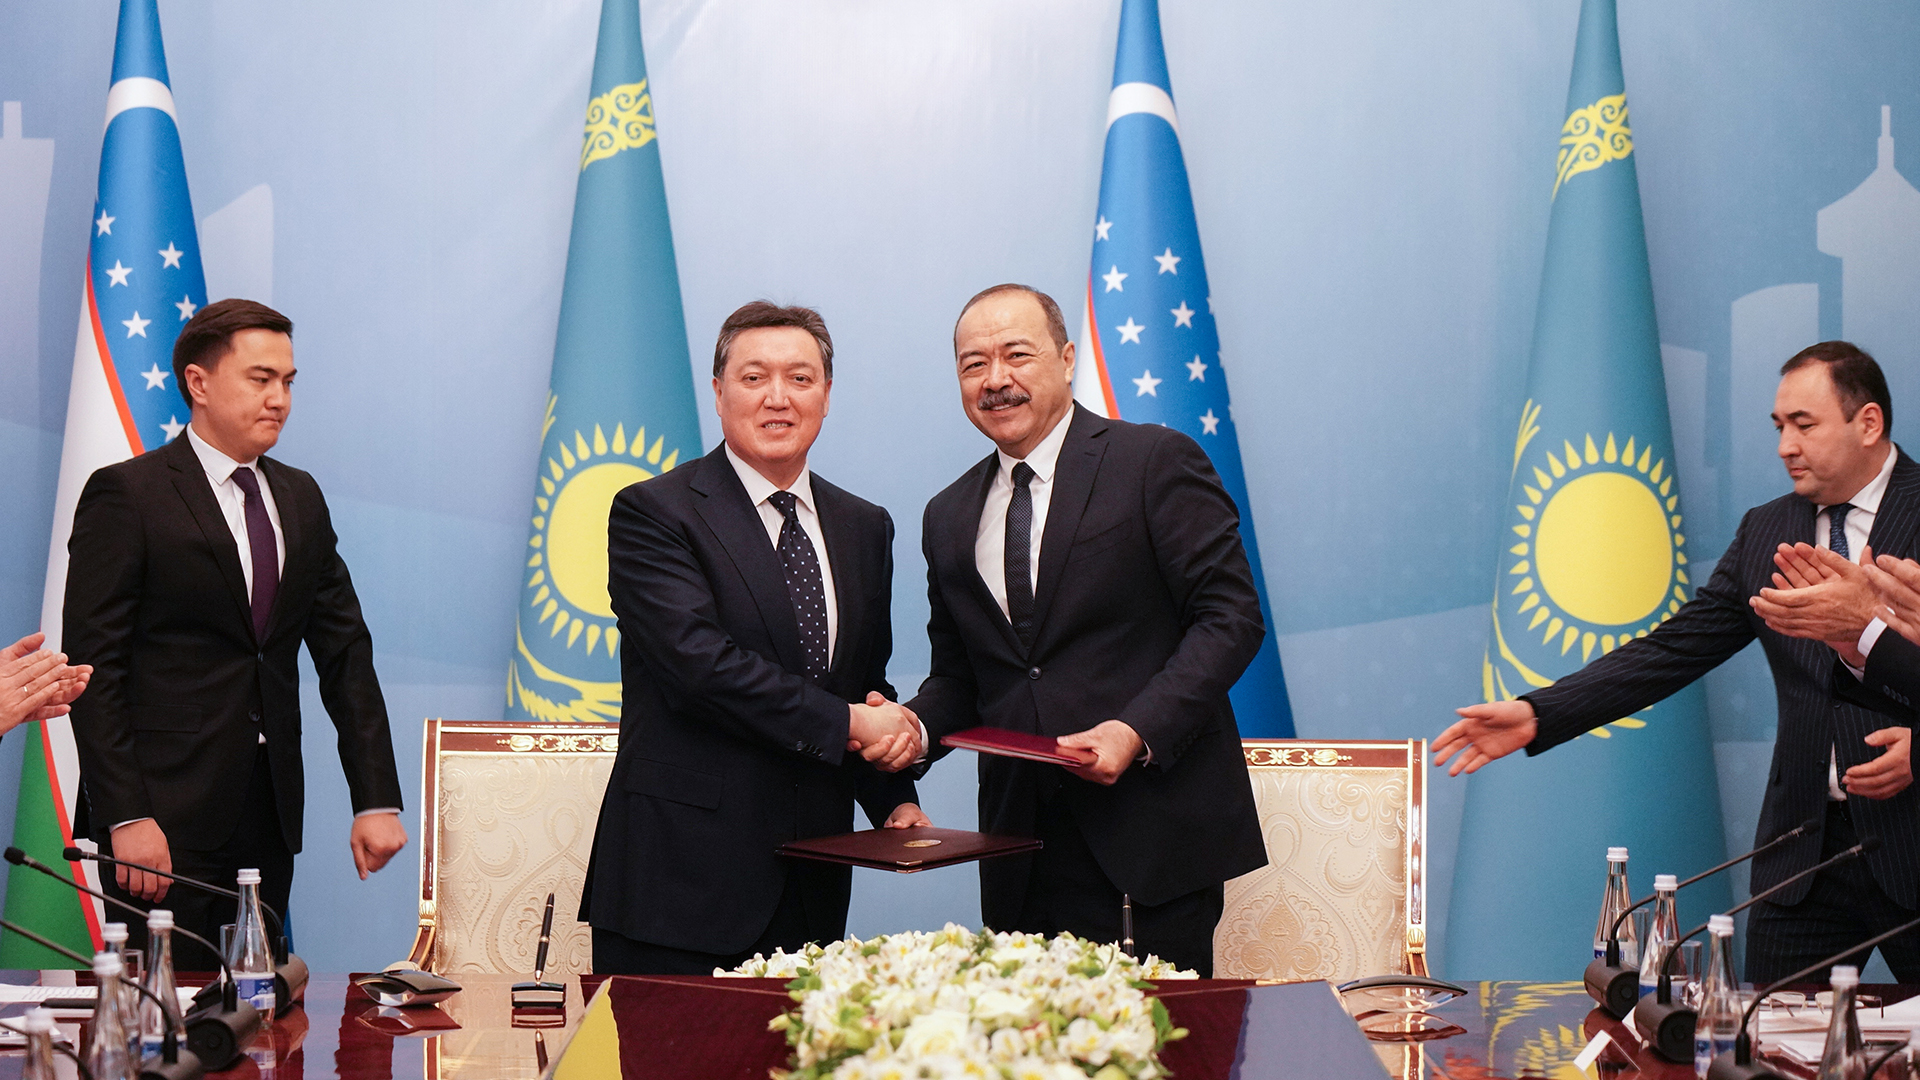 Қазақстан мен Өзбекстанның ІІ Аймақаралық ынтымақтастық  форумының қорытындысы бойынша $500 млн жуық болатын 52 келісімге қол қойылды